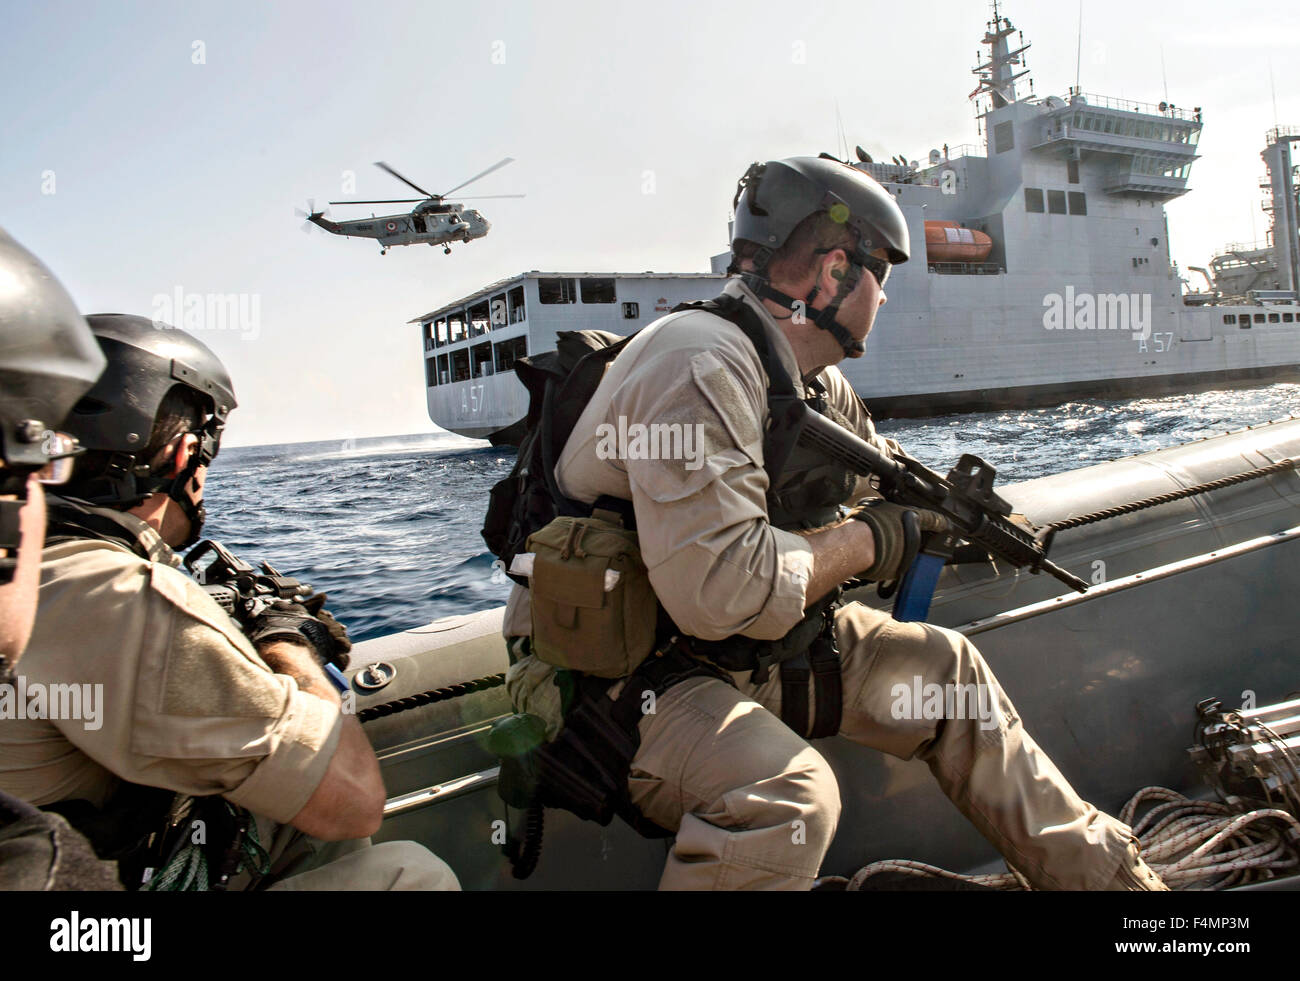 Les forces d'opérations spéciales de la marine américaine avec la marine indienne dans un 11 mètres à coque rigide au cours d'une visite, un conseil, une perquisition et saisie percer dans le cadre de l'exercice, le 17 octobre 2015 Malabar dans la baie du Bengale. Banque D'Images